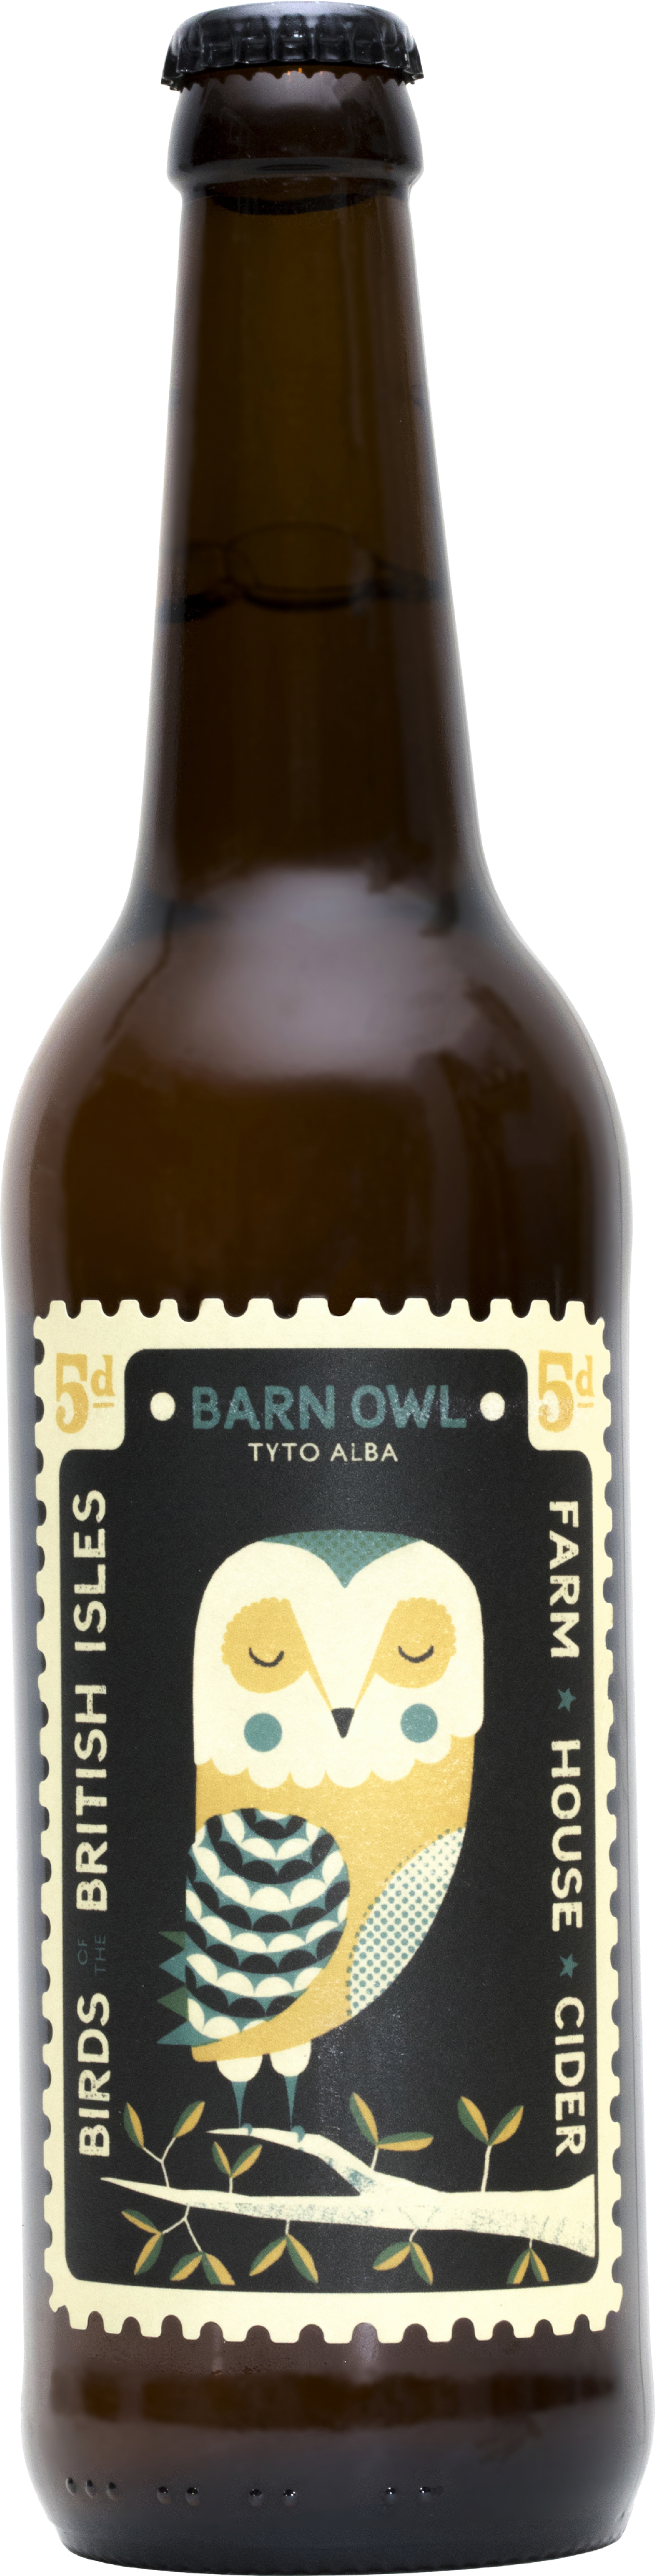 PERRY'S Farmhouse Cider - Barn Owl 500ml 4.5% ABV